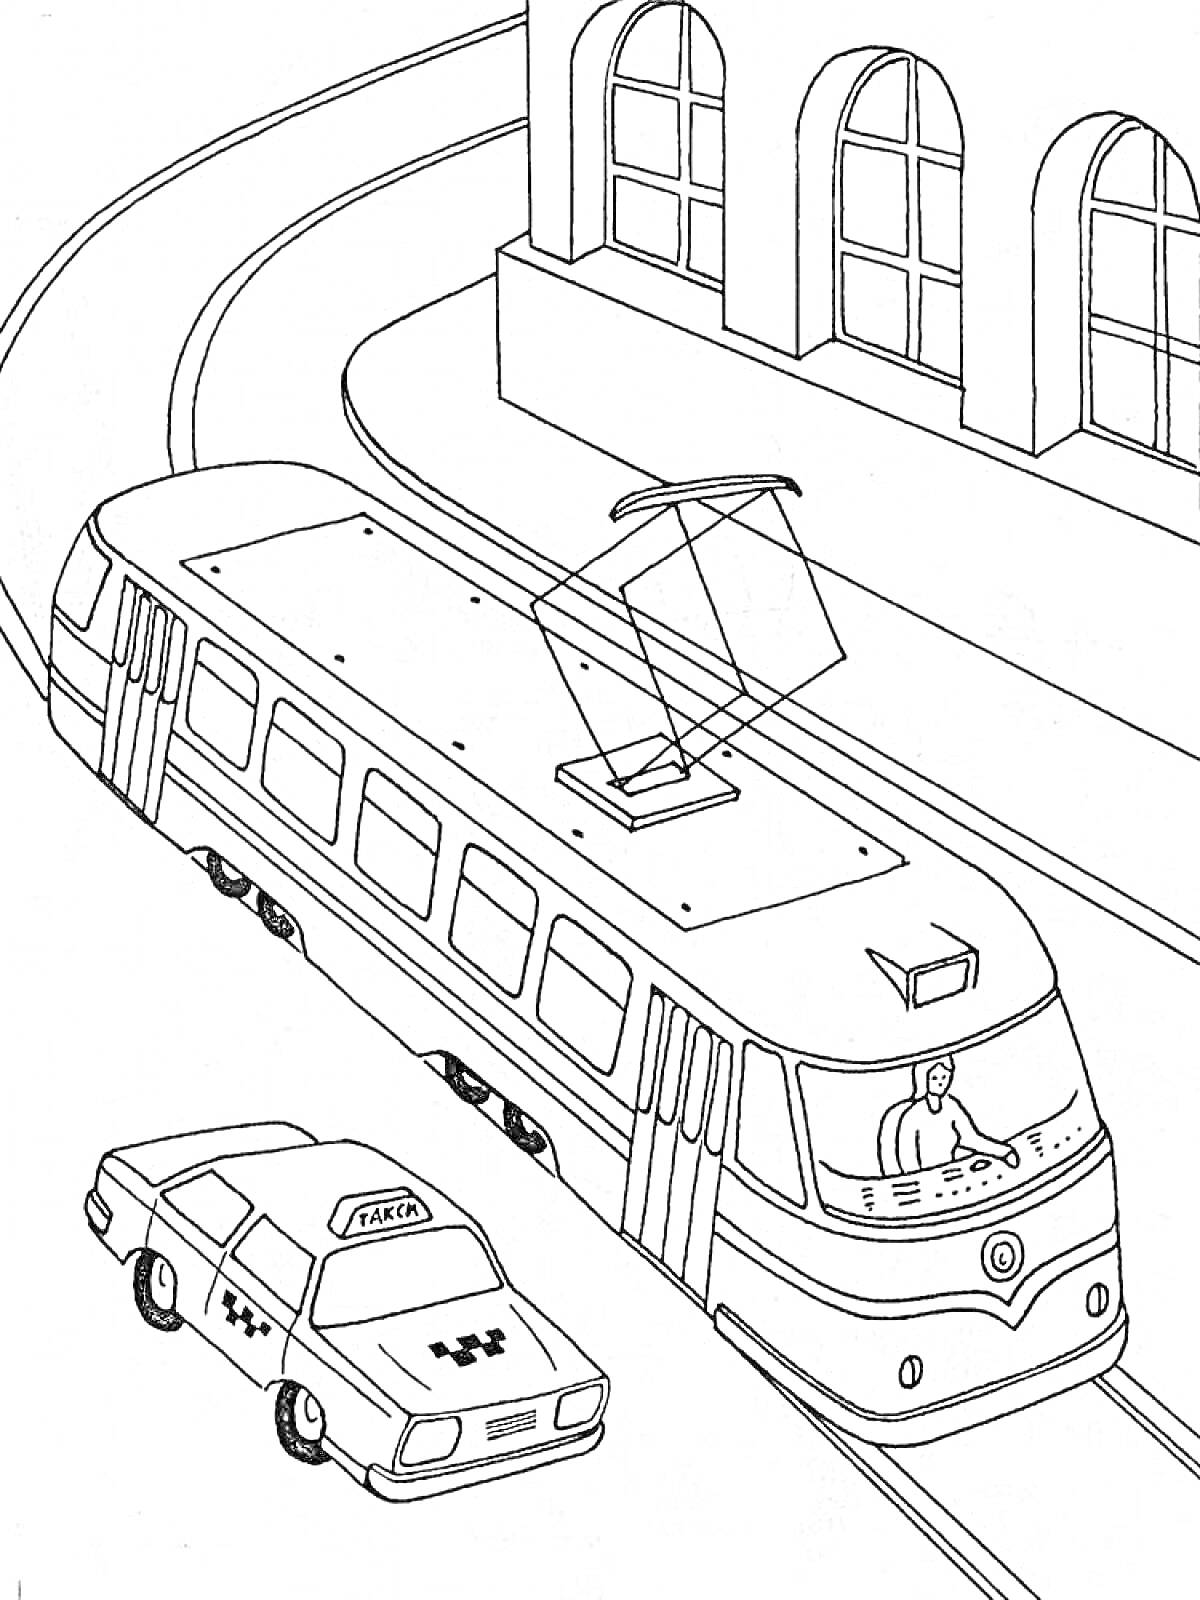 Трамвай на городской улице, такси, и здание с арочными окнами